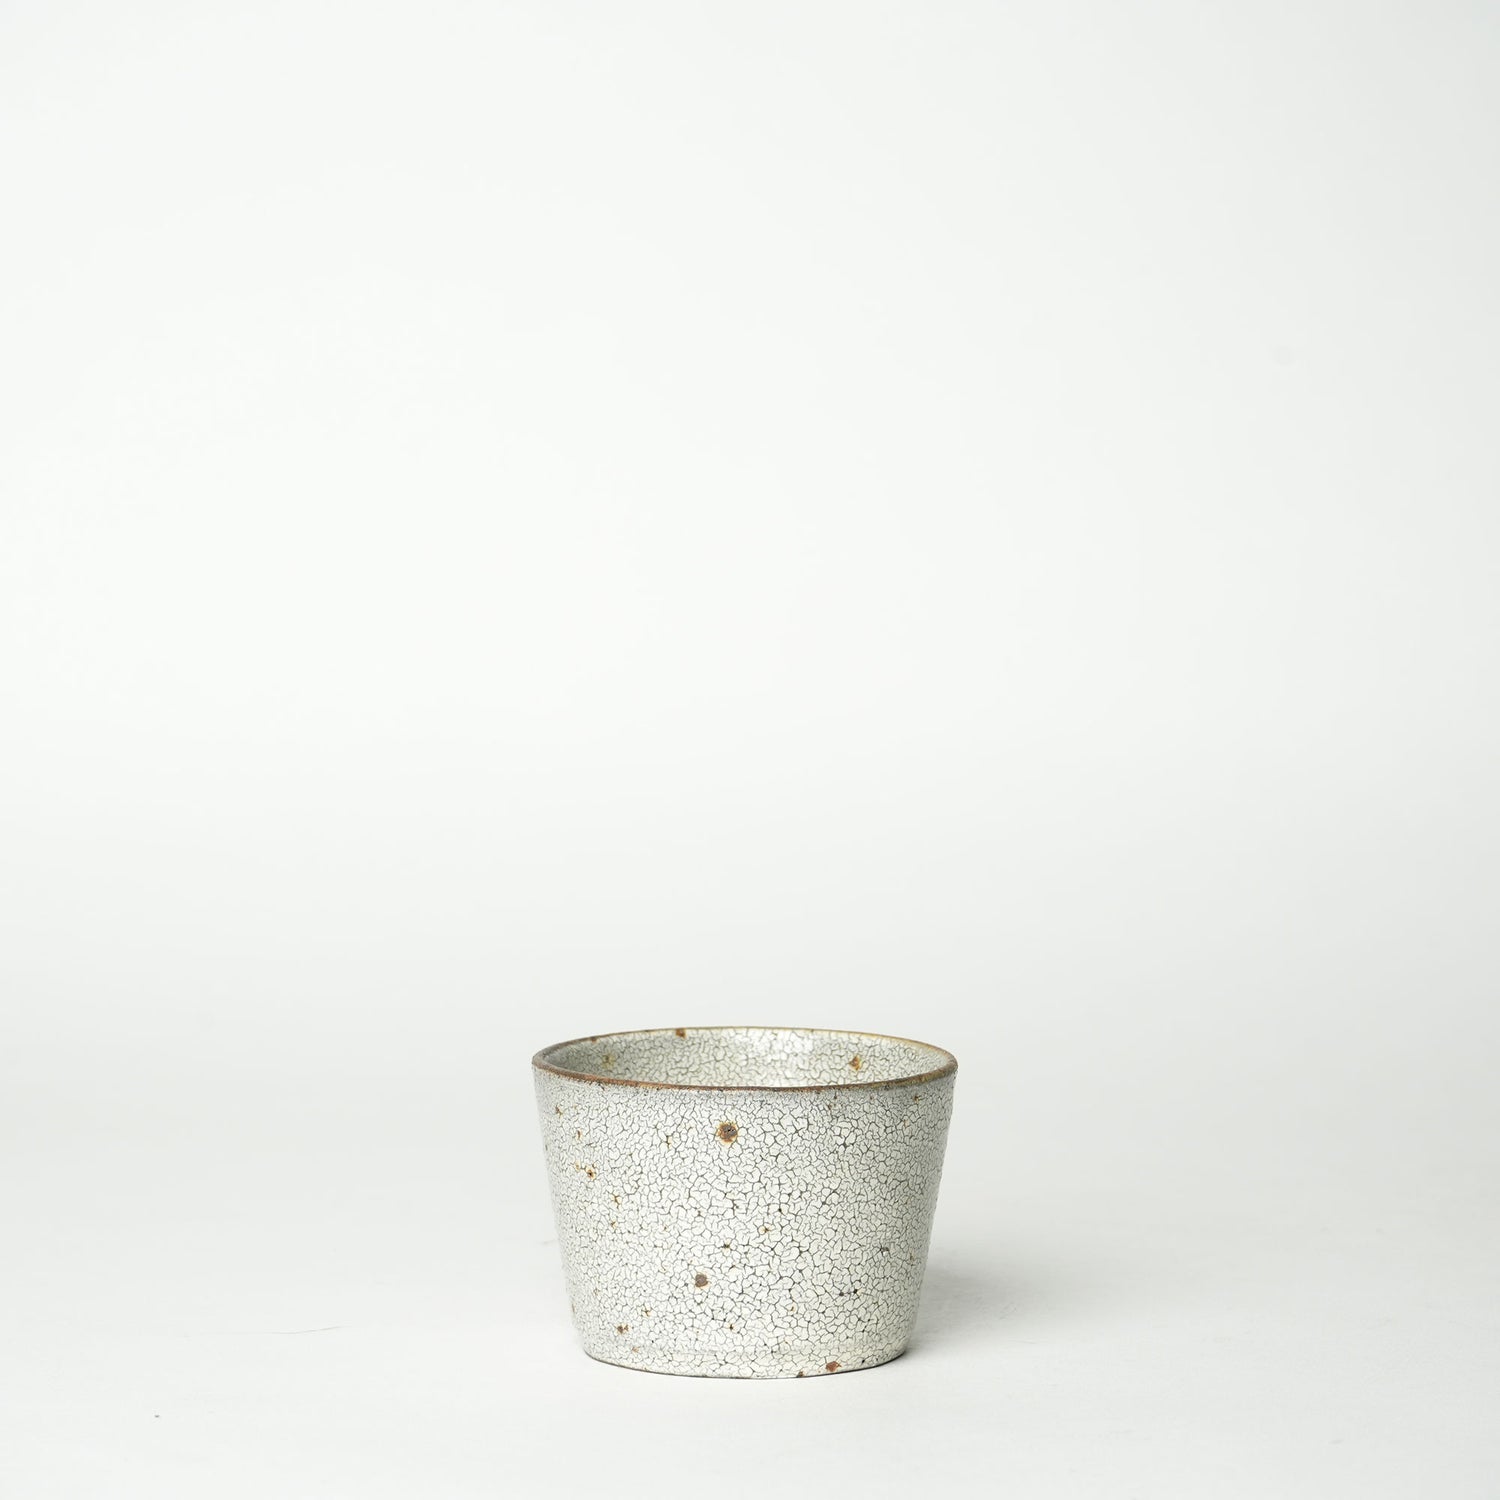 Futoshi Yamashita Japanese volcanic pottery